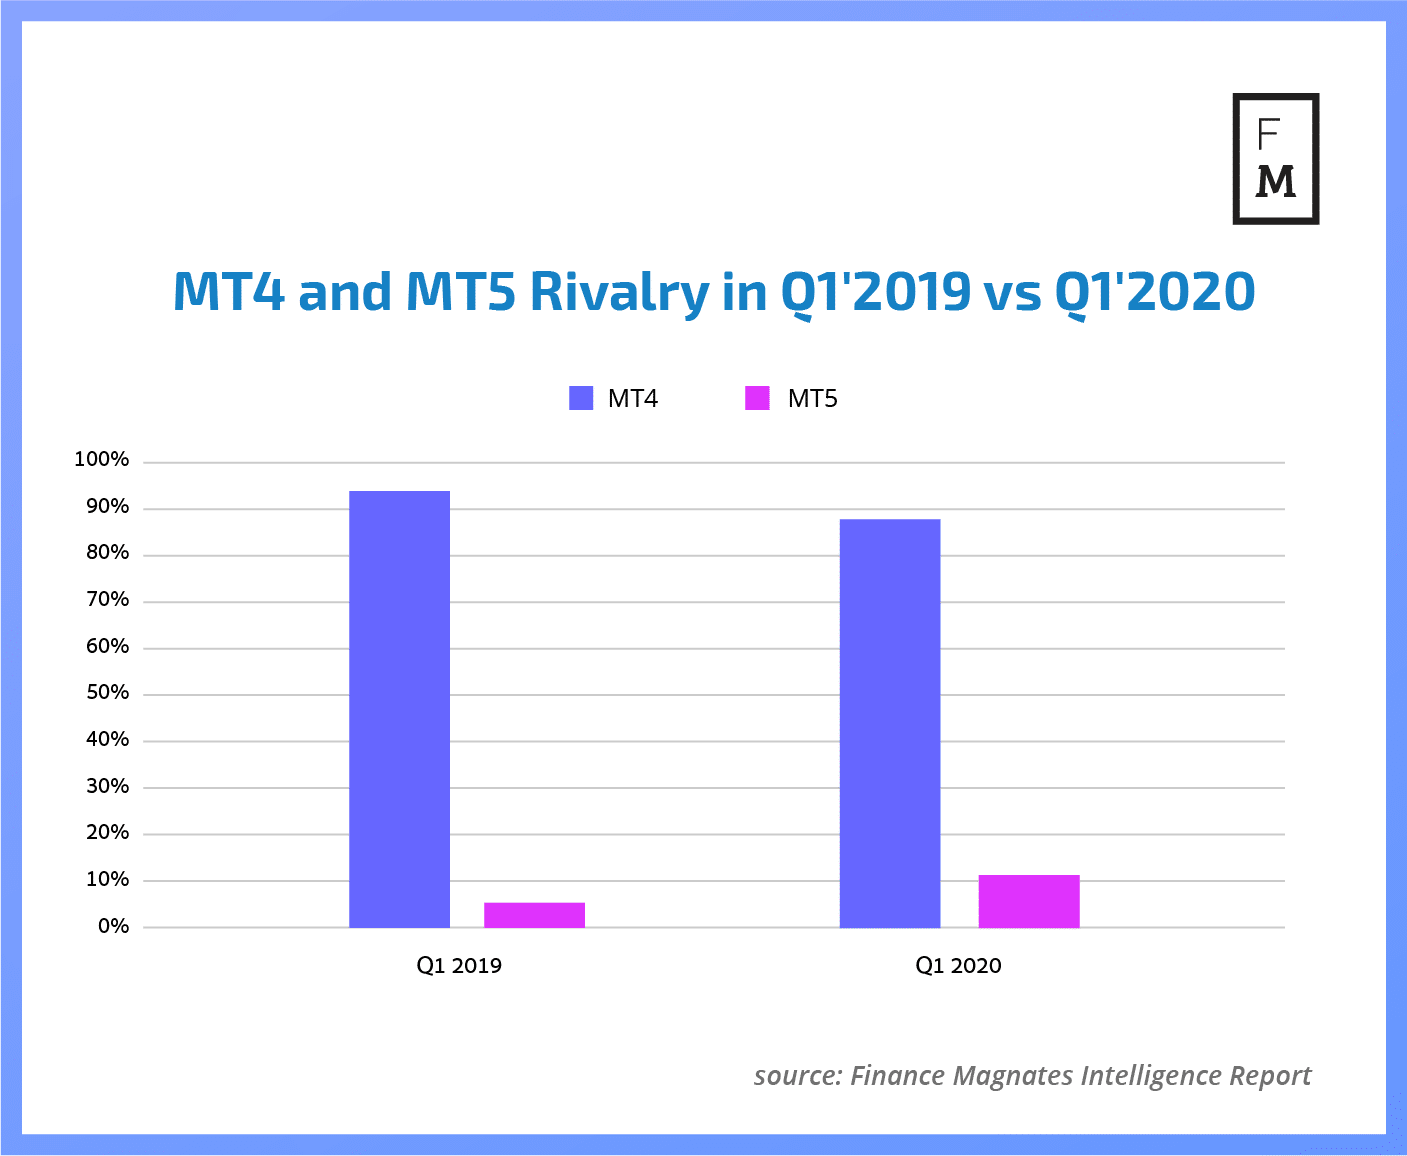 MT4 and MT5 comparison